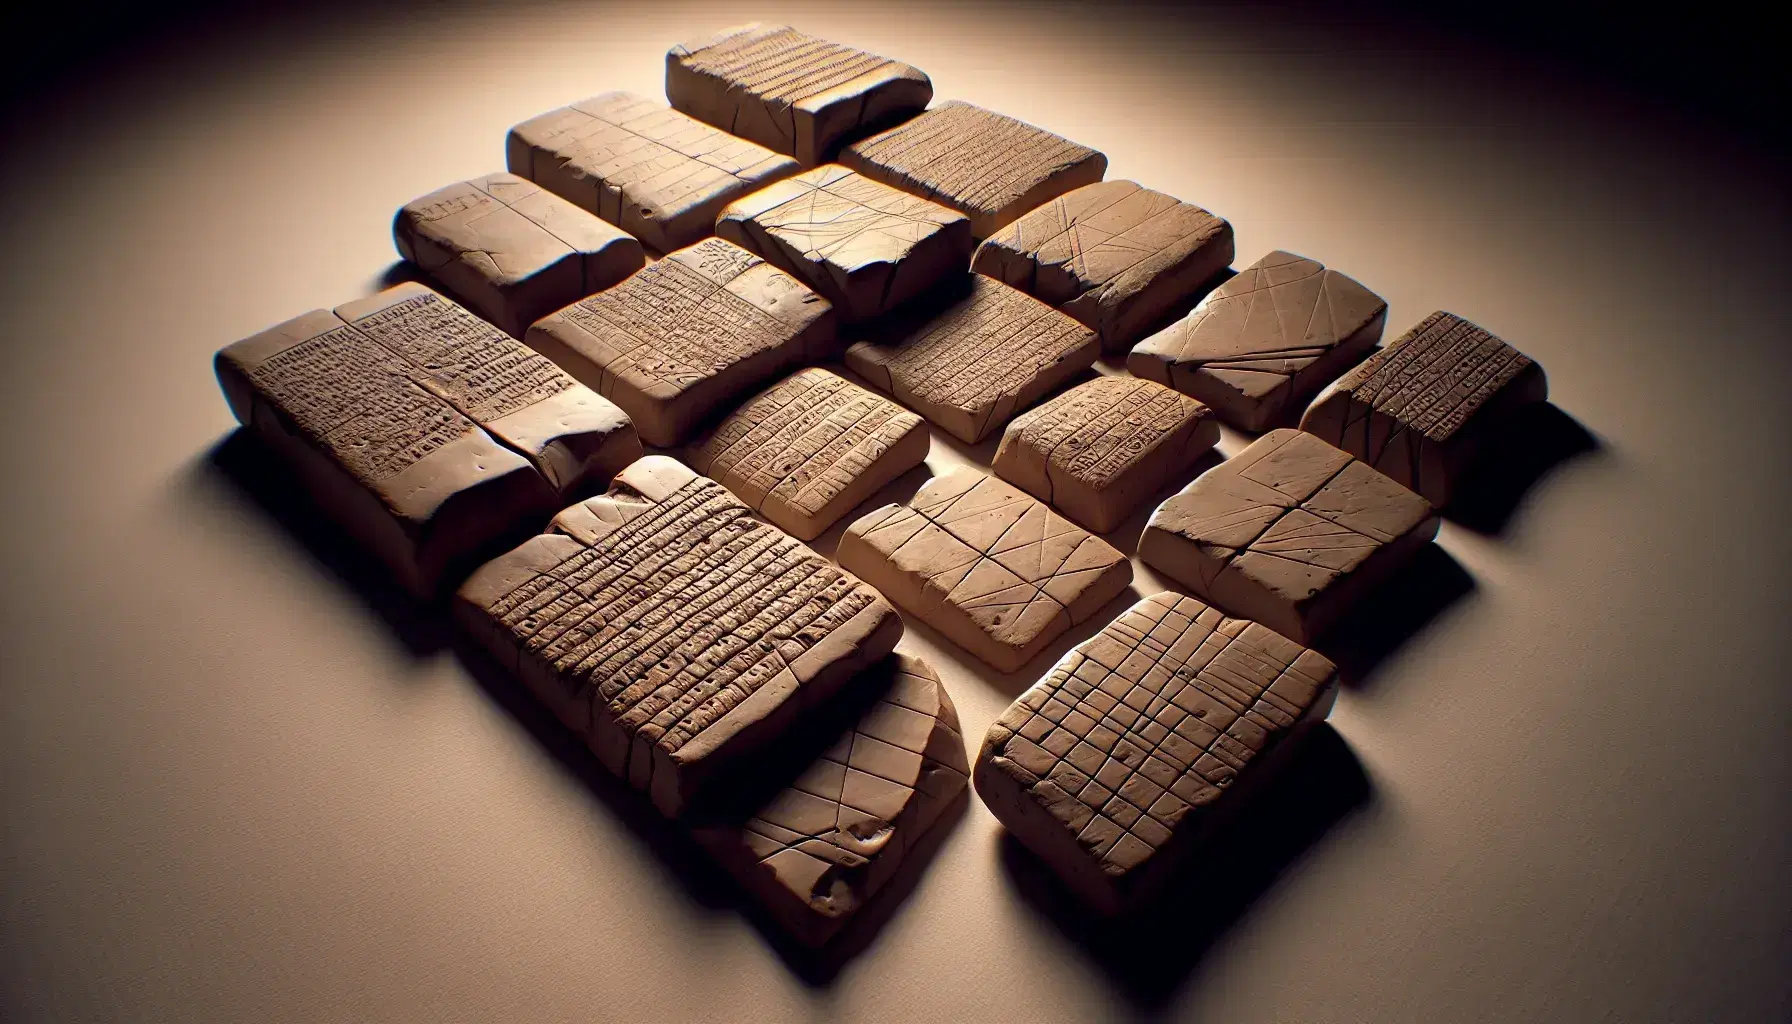 Tabletas de arcilla antiguas con marcas de escritura en diagonal sobre fondo neutro, destacando texturas y variaciones de color marrón.